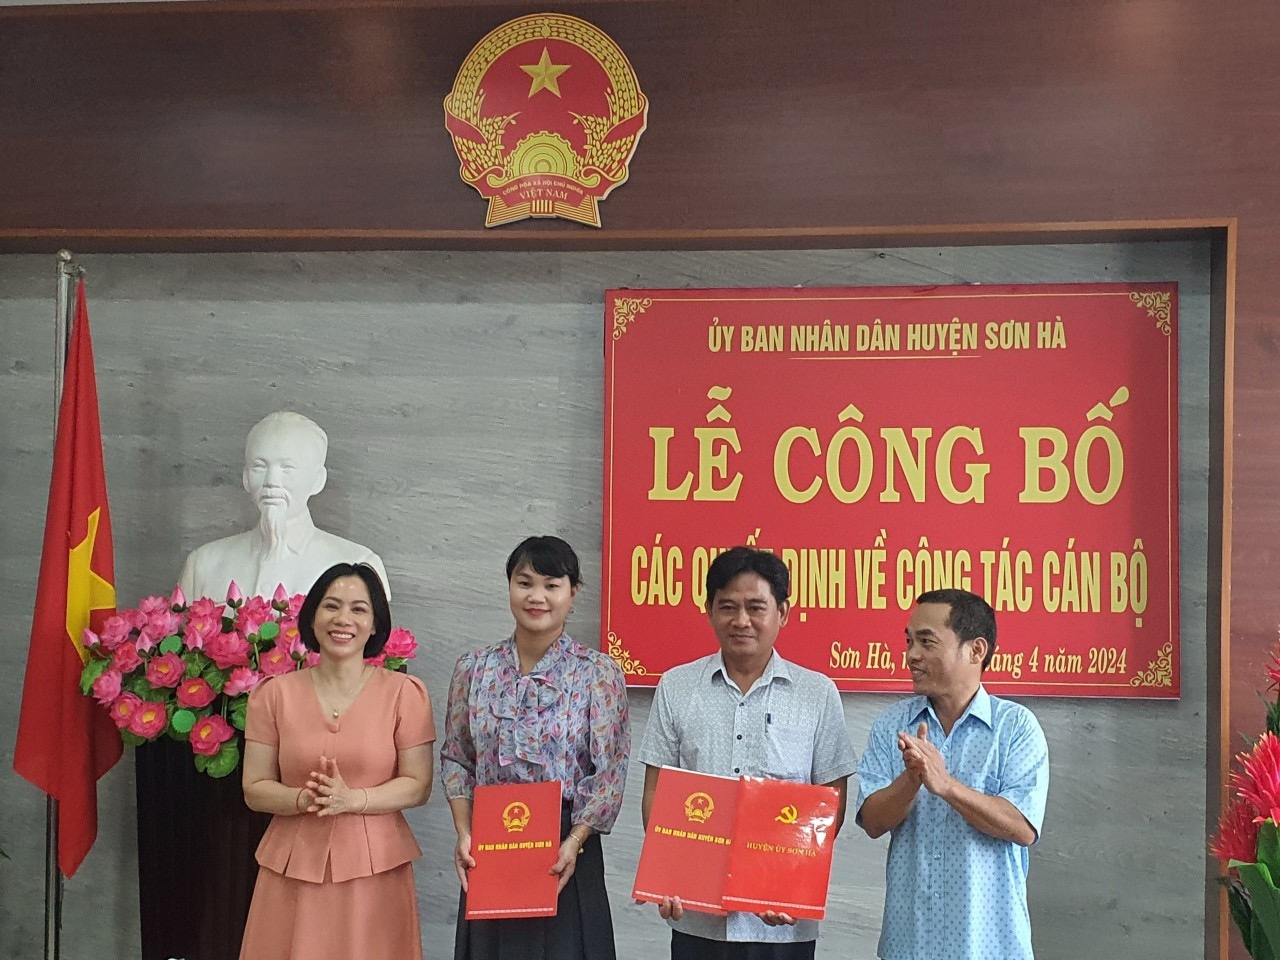 UBND huyện Sơn Hà tổ chức hội nghị công bố các quyết định về công tác cán bộ.